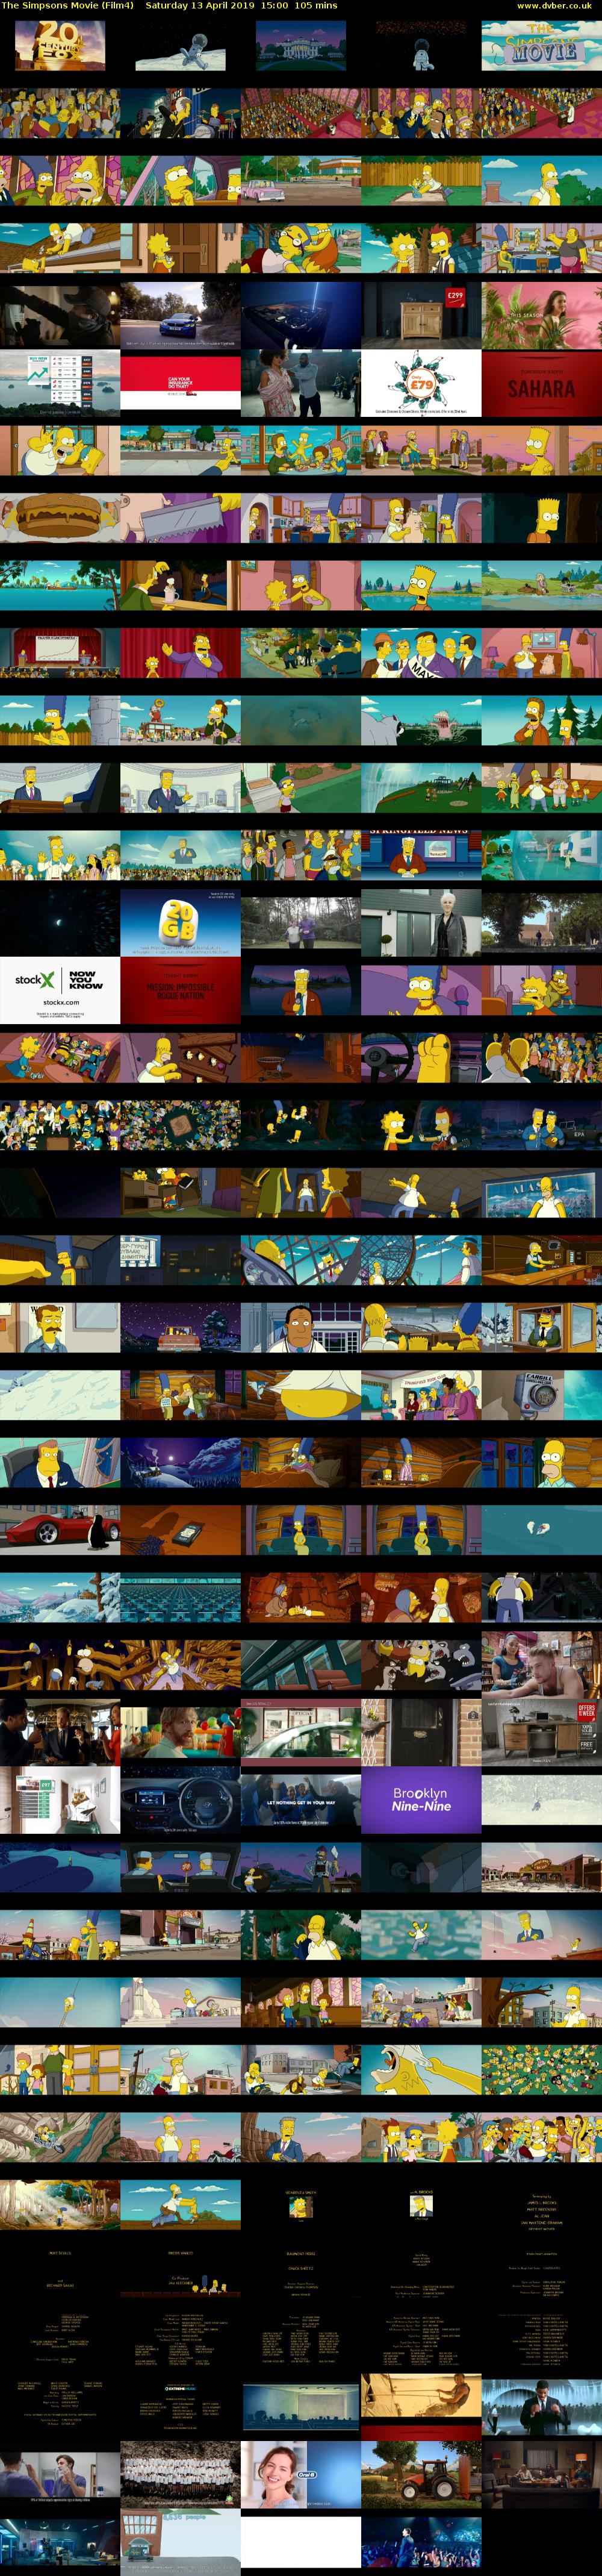 The Simpsons Movie (Film4) Saturday 13 April 2019 15:00 - 16:45